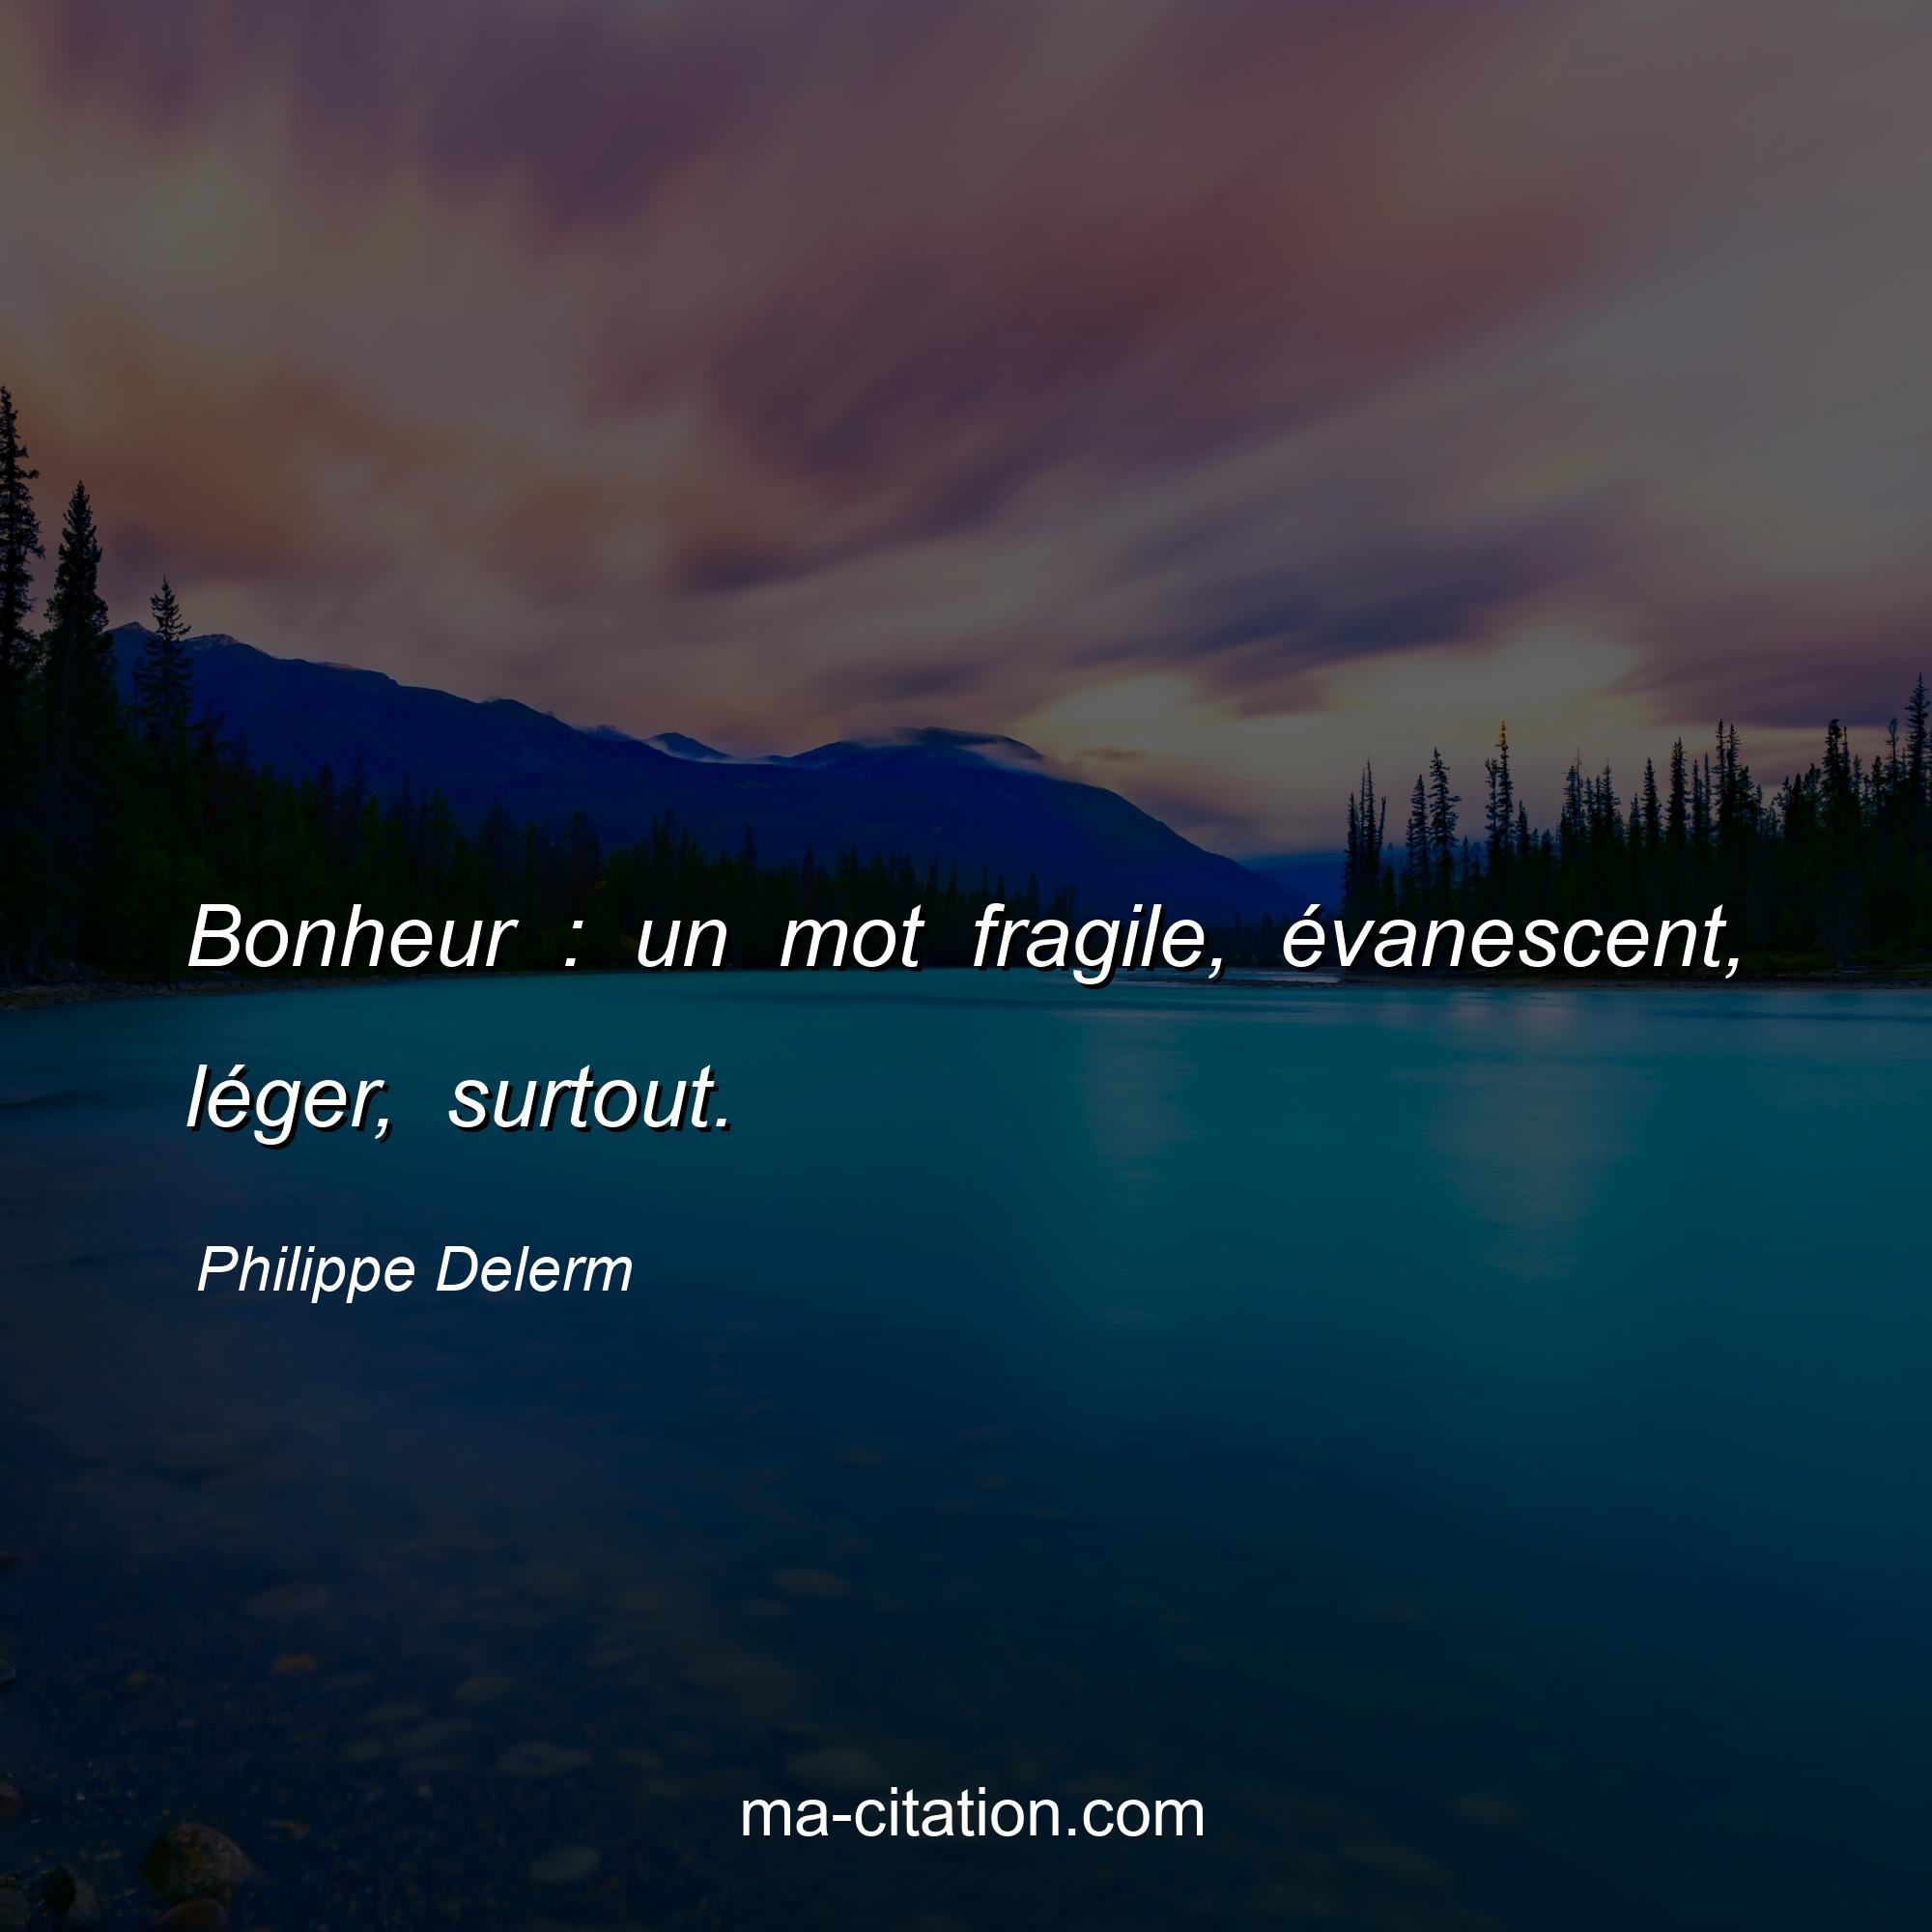 Philippe Delerm : Bonheur : un mot fragile, évanescent, léger, surtout.